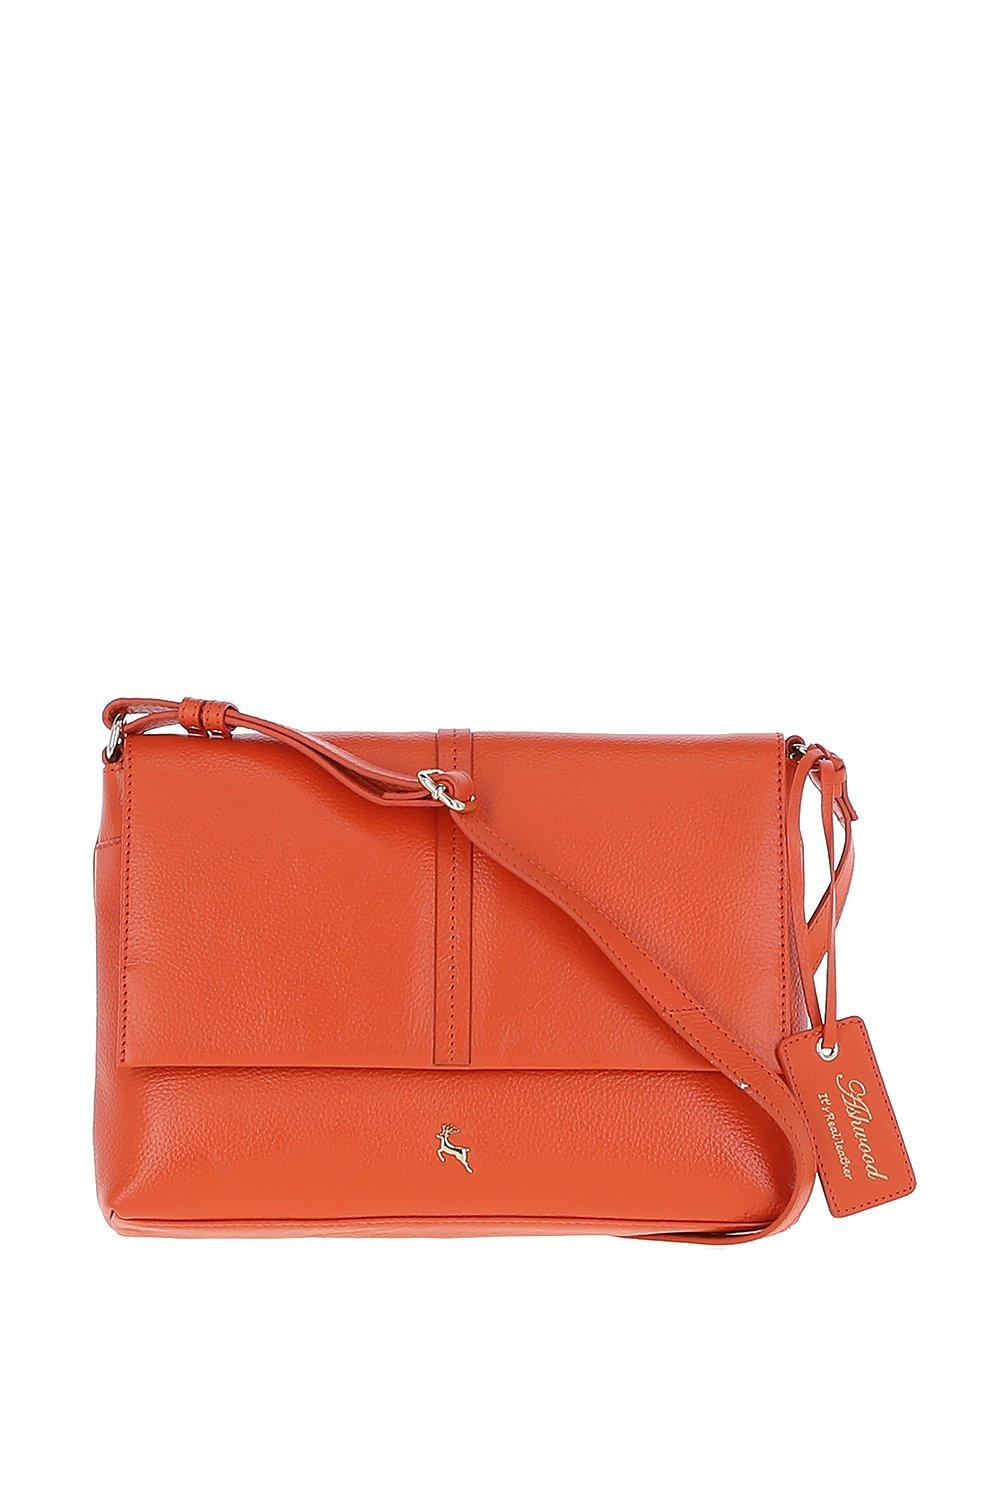 Кожаная сумка через плечо Candy Ashwood Leather, оранжевый